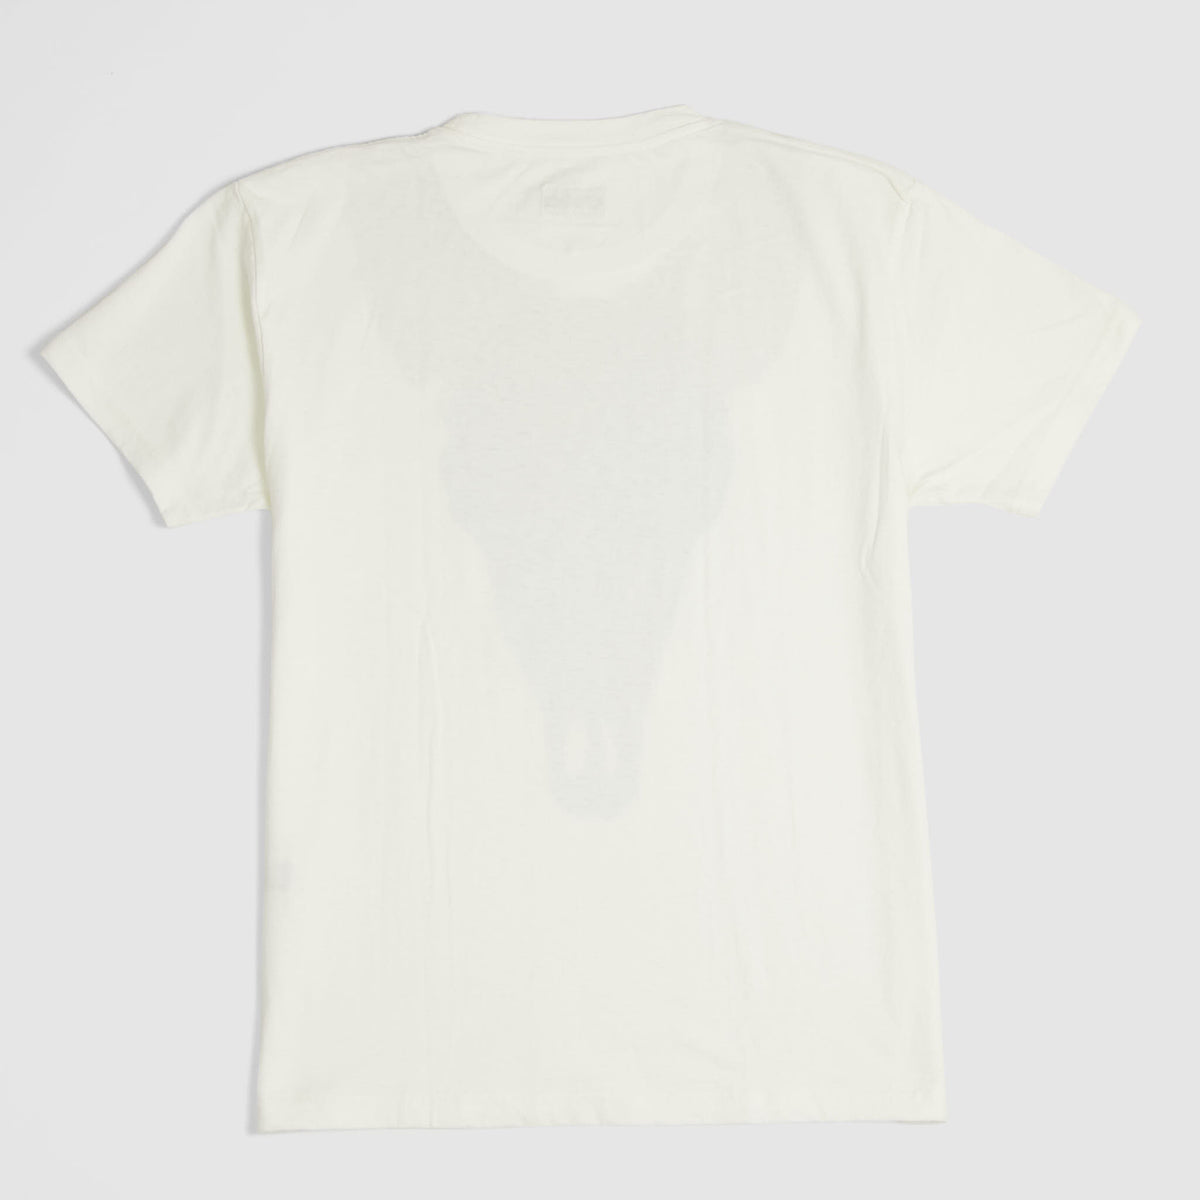 Kapital Kountry Longhorn T-Shirt